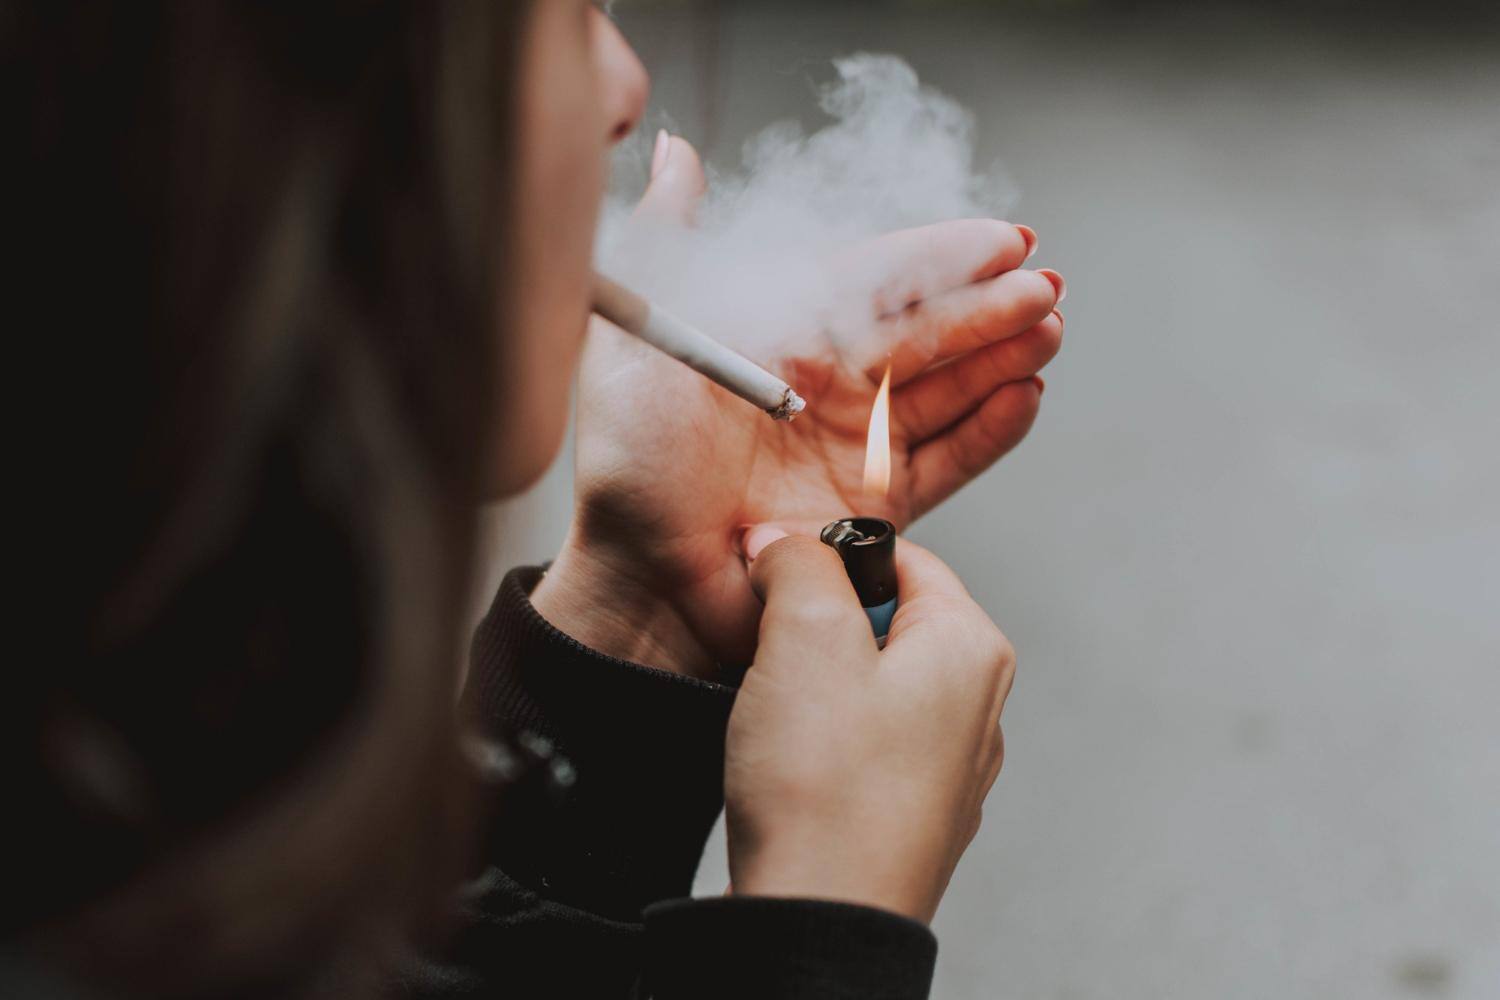 Atualmente, apenas maiores de 18 anos podem comprar cigarros ou produtos de tabaco no Reino Unido